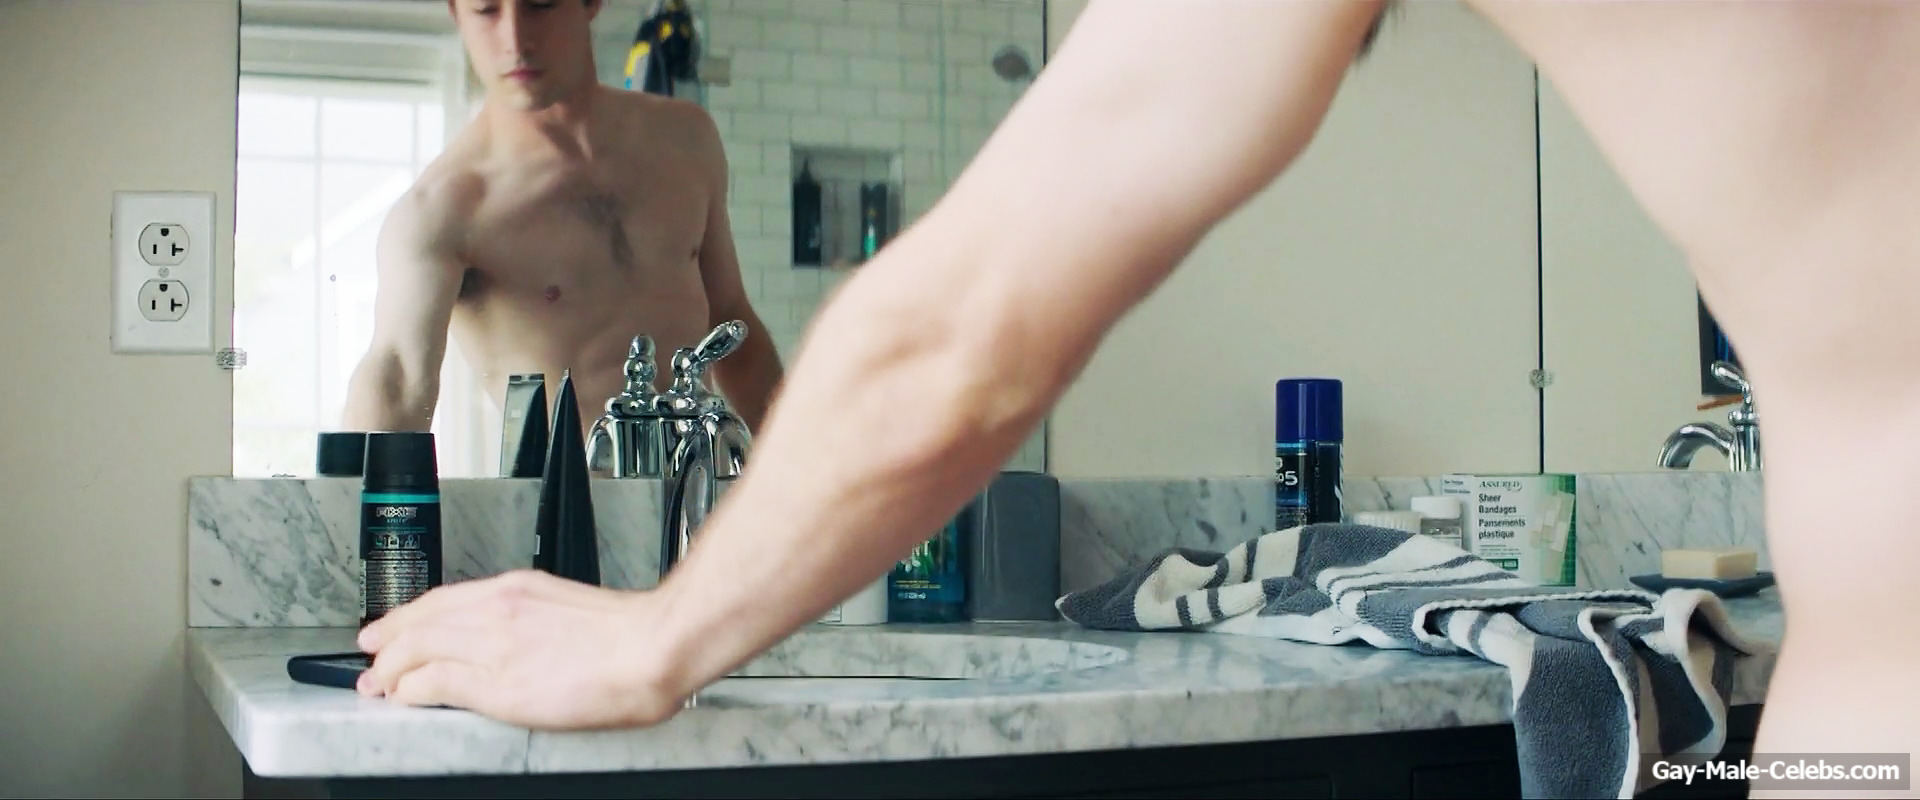 Dylan Minnette Nude Shower Scenes from Scream